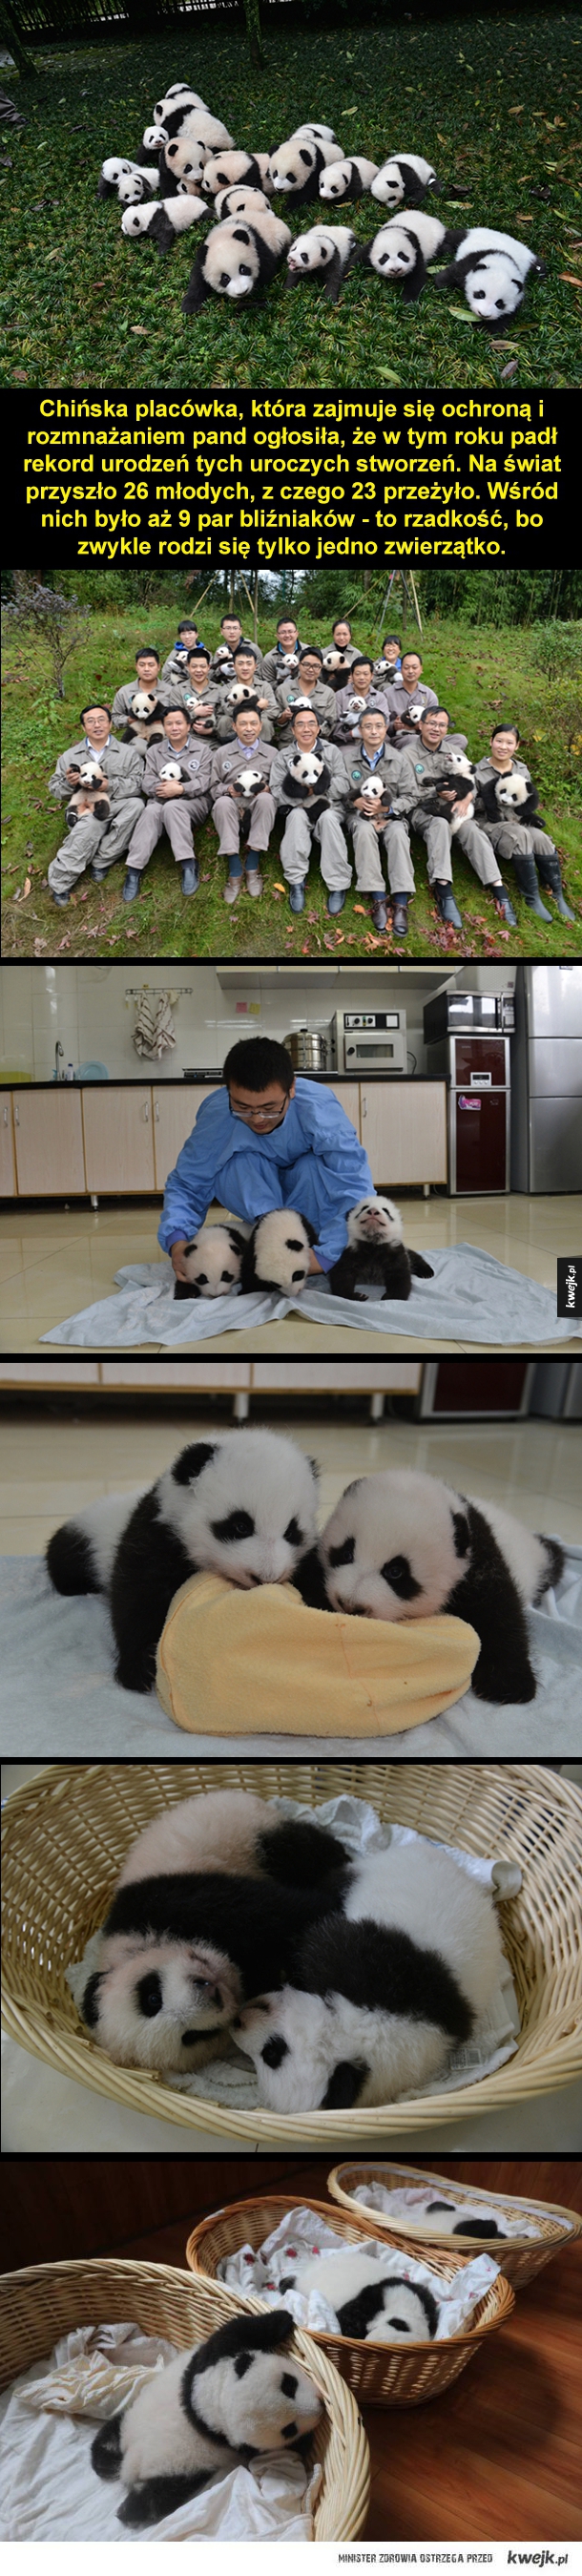 Chińska placówka, która zajmuje się ochroną i rozmnażaniem pand ogłosiła, że w tym roku padł rekord urodzeń tych uroczych stworzeń. Na świat przyszło 26 młodych, z czego 23 przeżyło. Wśród nich było aż 9 par bliźniaków - to rzadkość, bo zwykle rodzi się ty